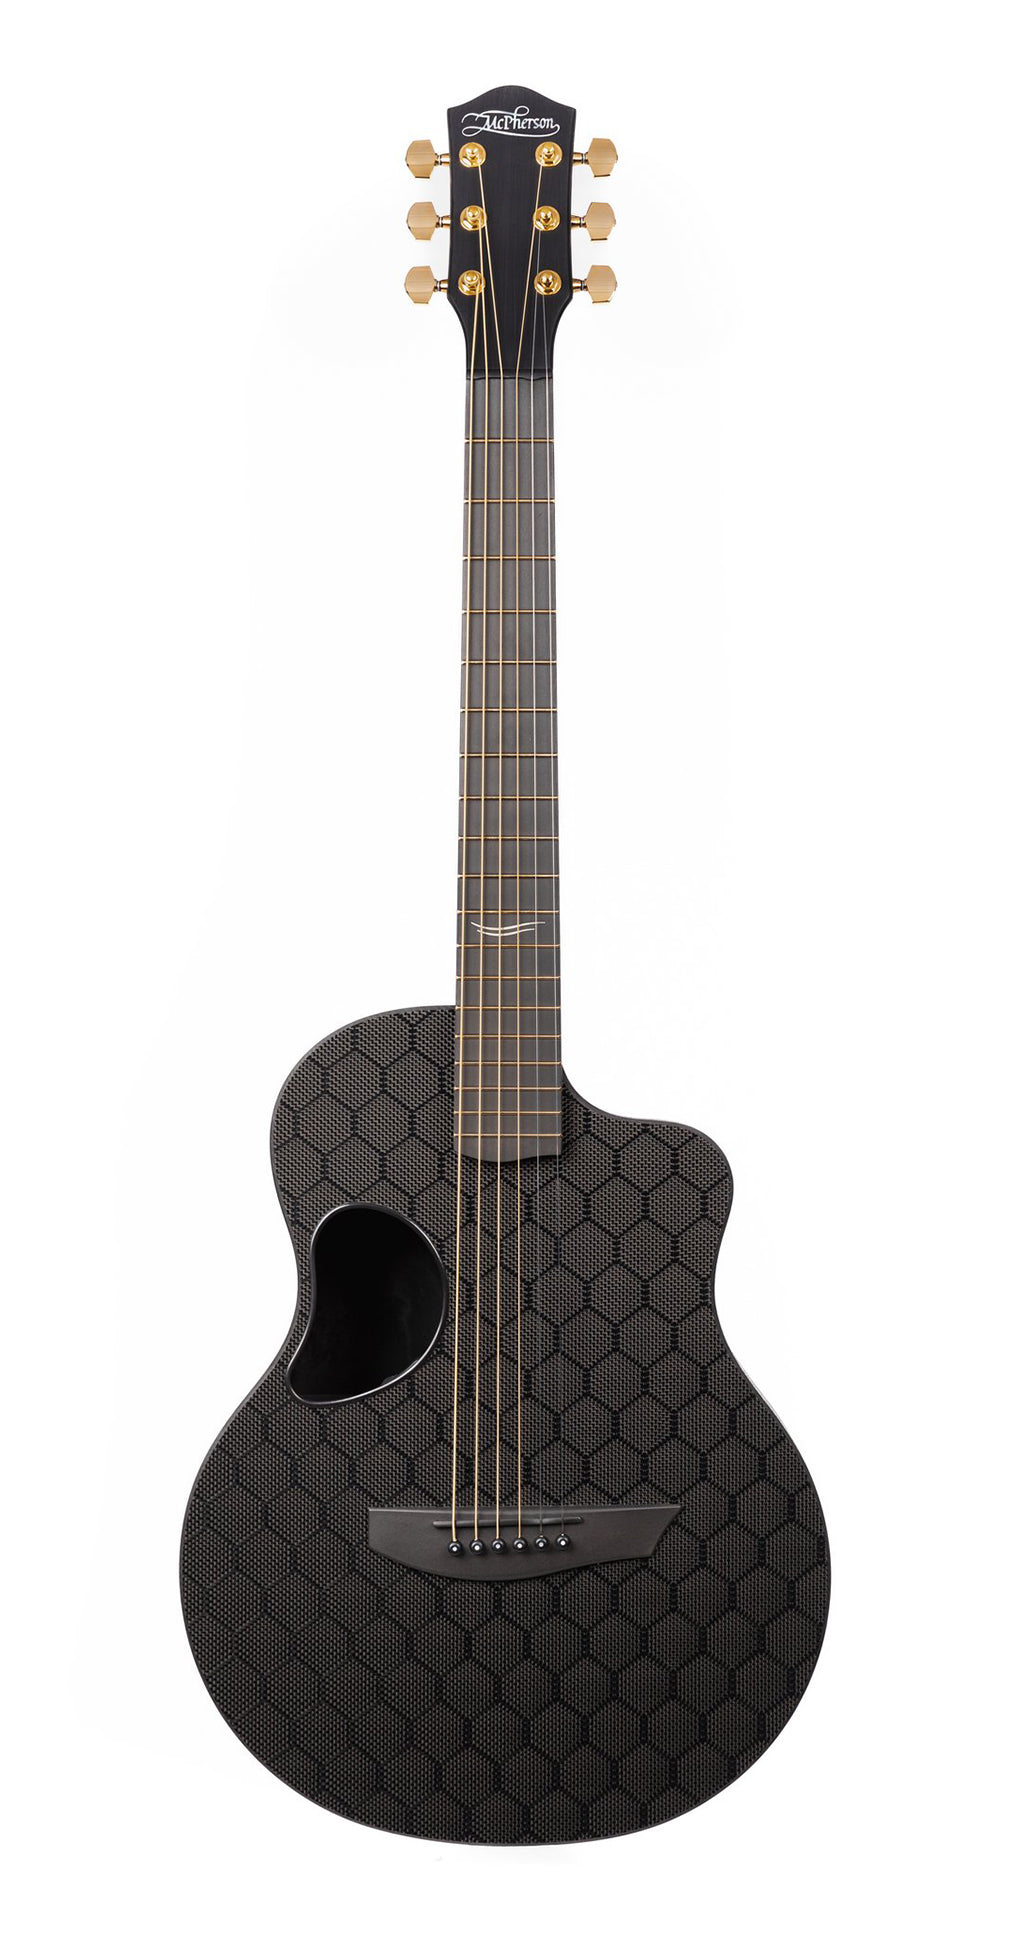 McPherson Touring Carbon Fiber Guitar - Honeycomb Top